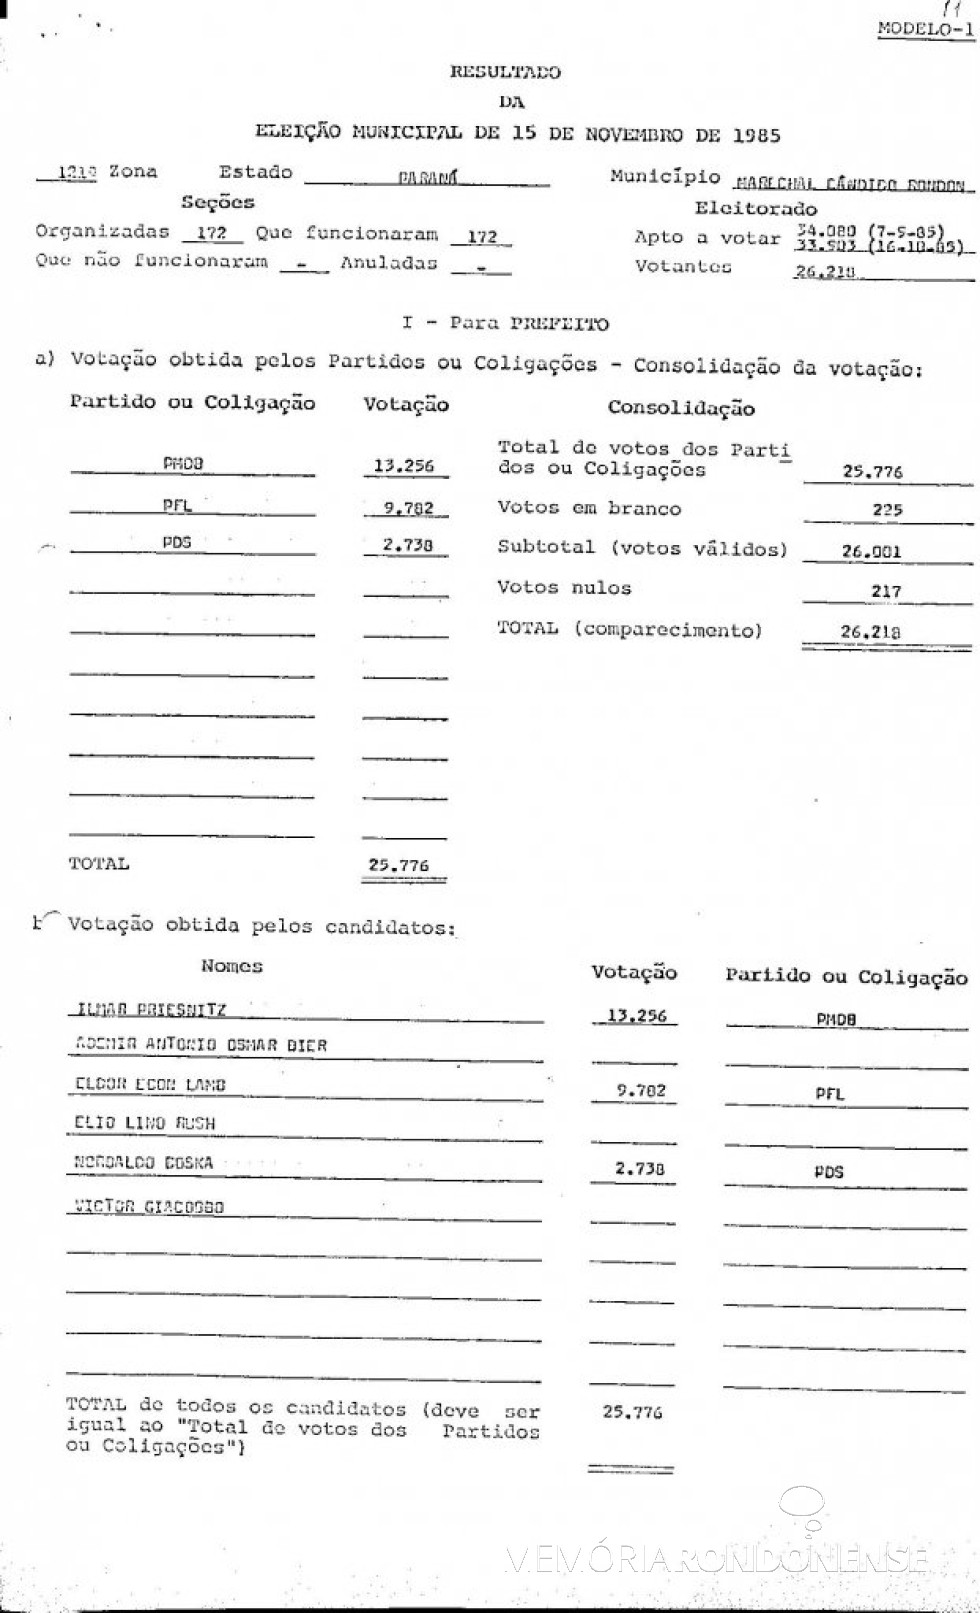 Boletim do TRE-PR com o resultado da eleição municipal de 15 de novembro de 1985. 
Imagem: Acervo TRE-PR - FOTO 6 - 